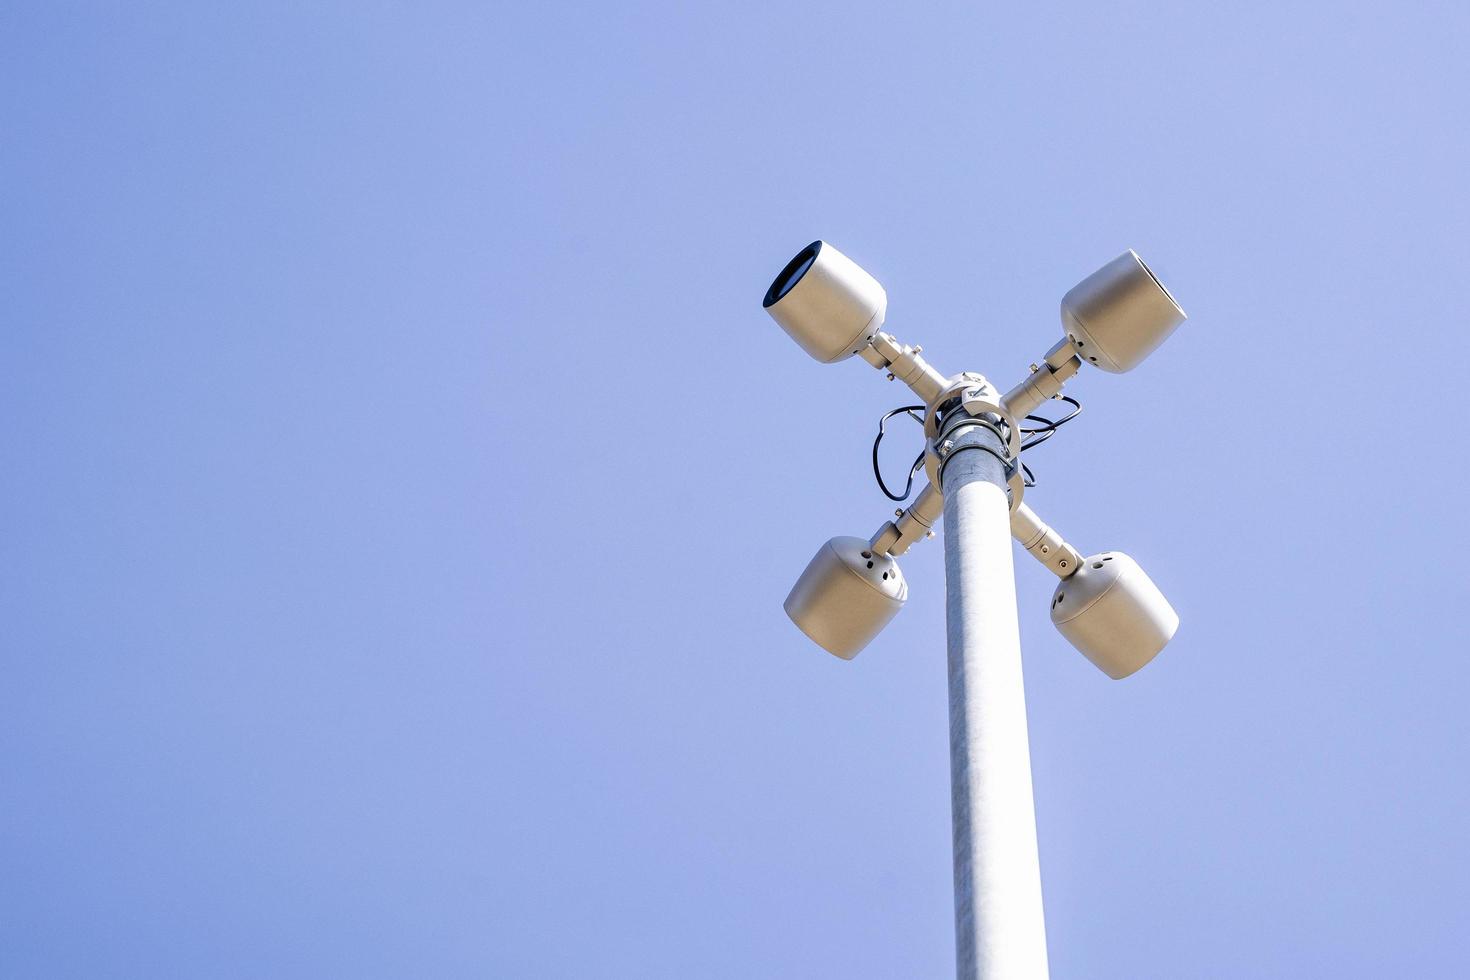 une caméra de surveillance sur poteau dans un lieu public. caméra de vidéosurveillance photo